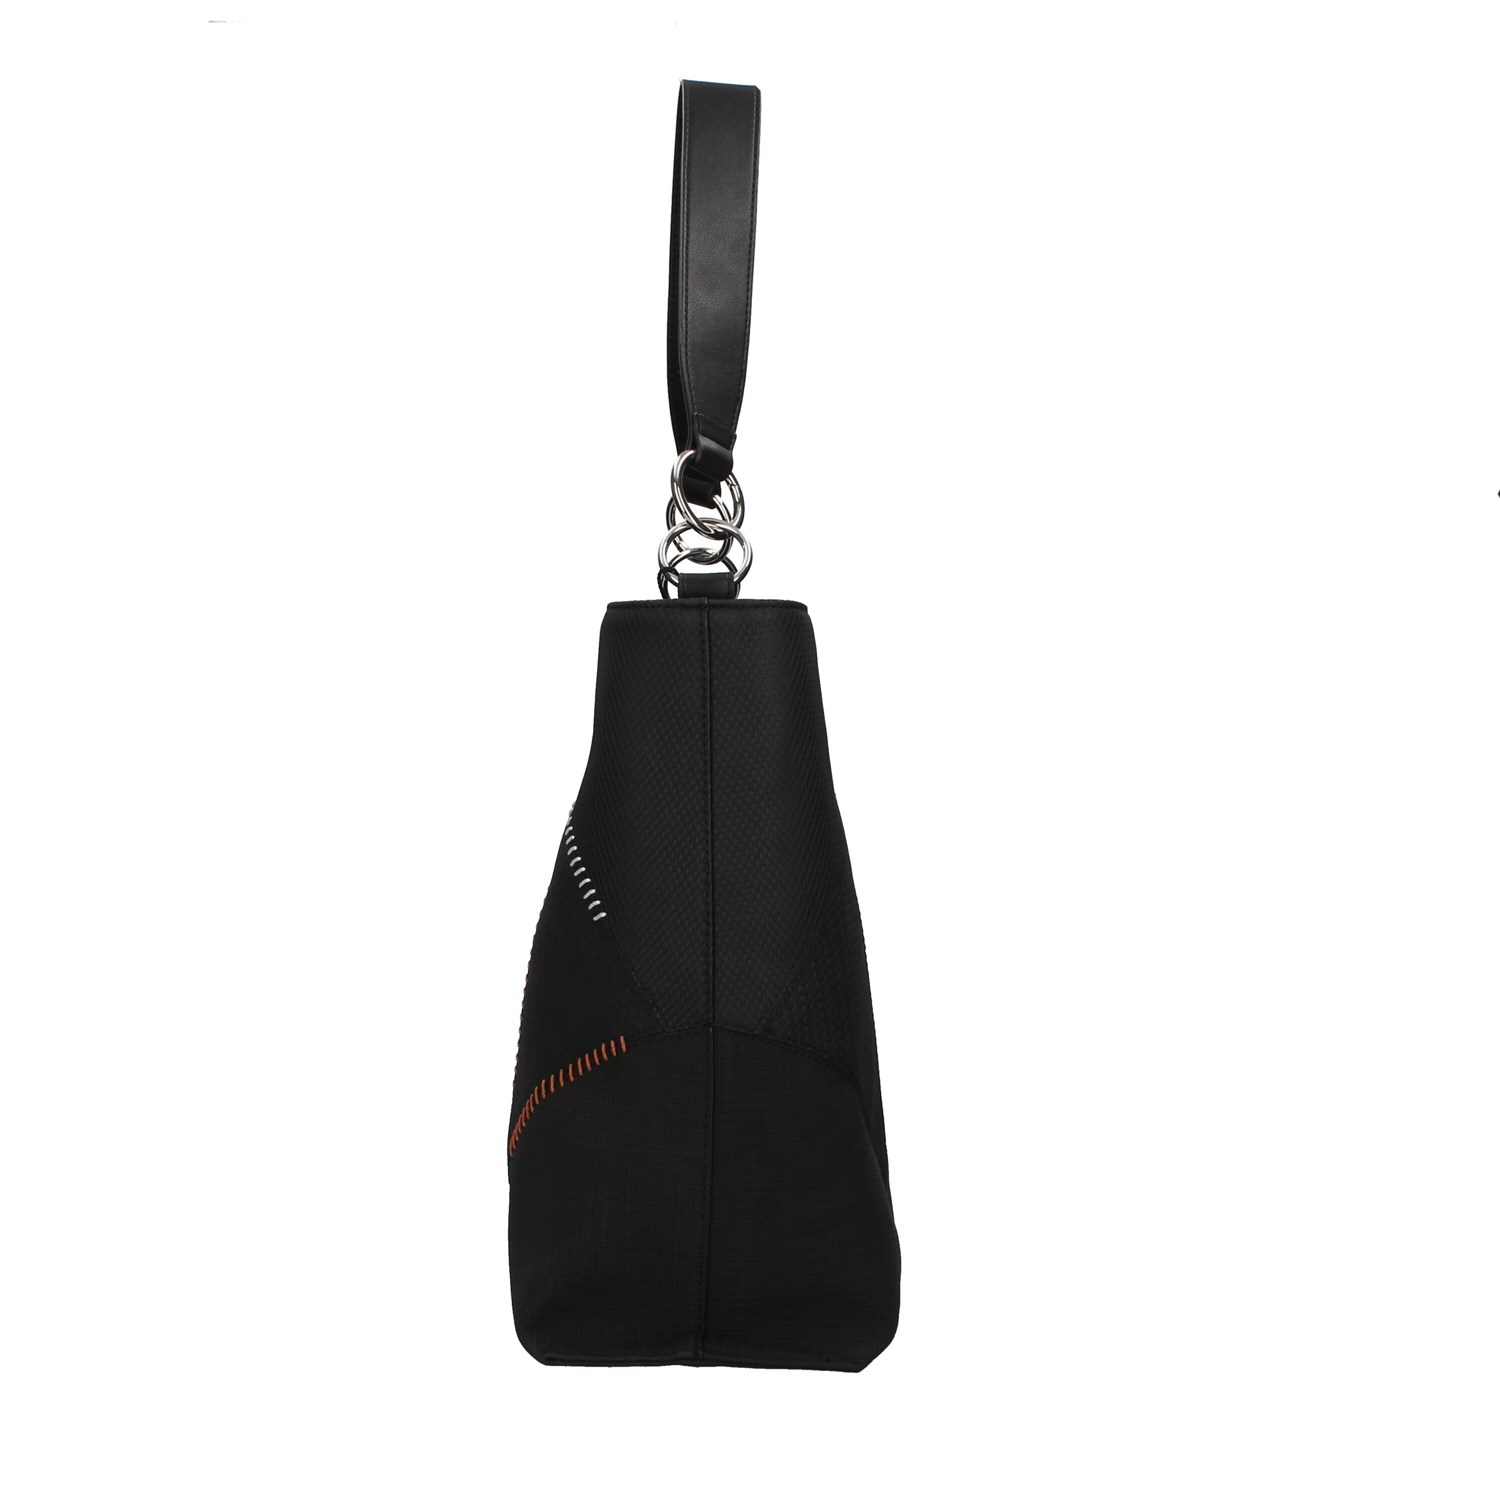 Desigual Bags Accessories Shoulder BLACK 22WAXP43